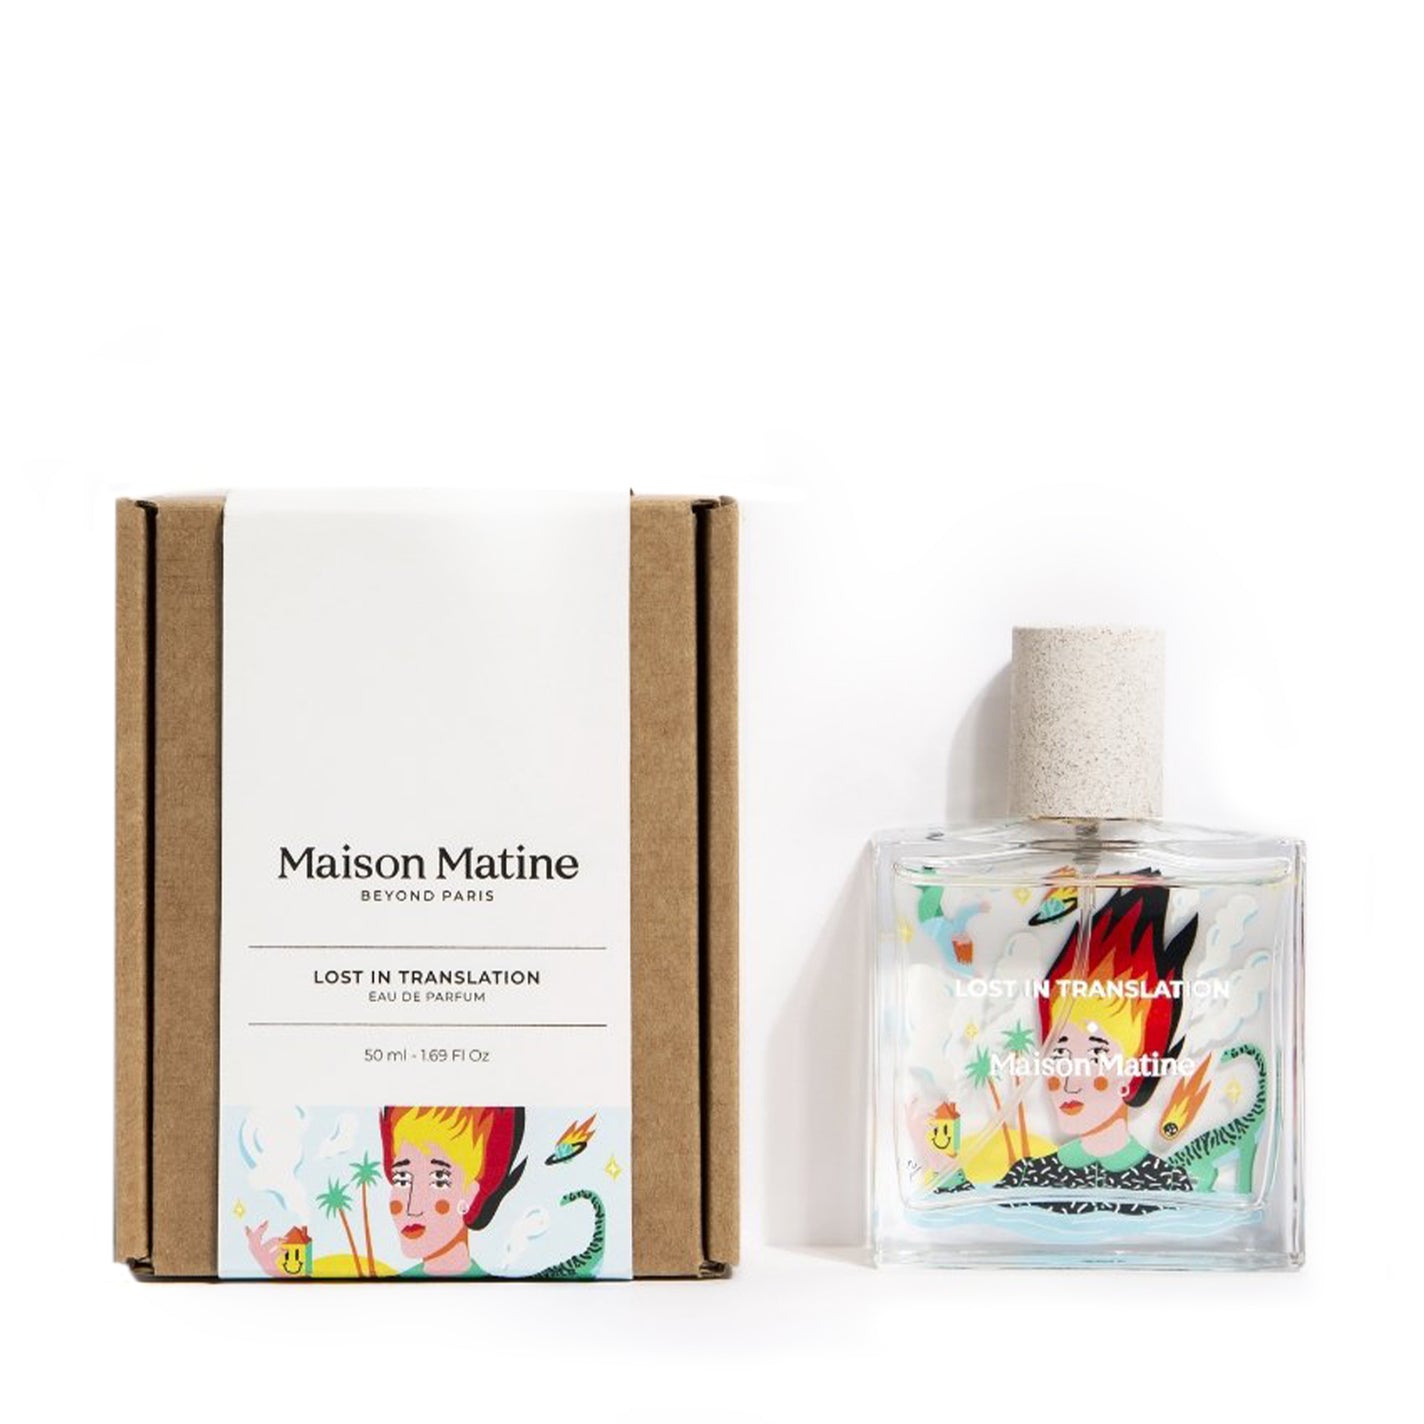 Maison Matine Lost in Translation Eau de Parfum - 50ml